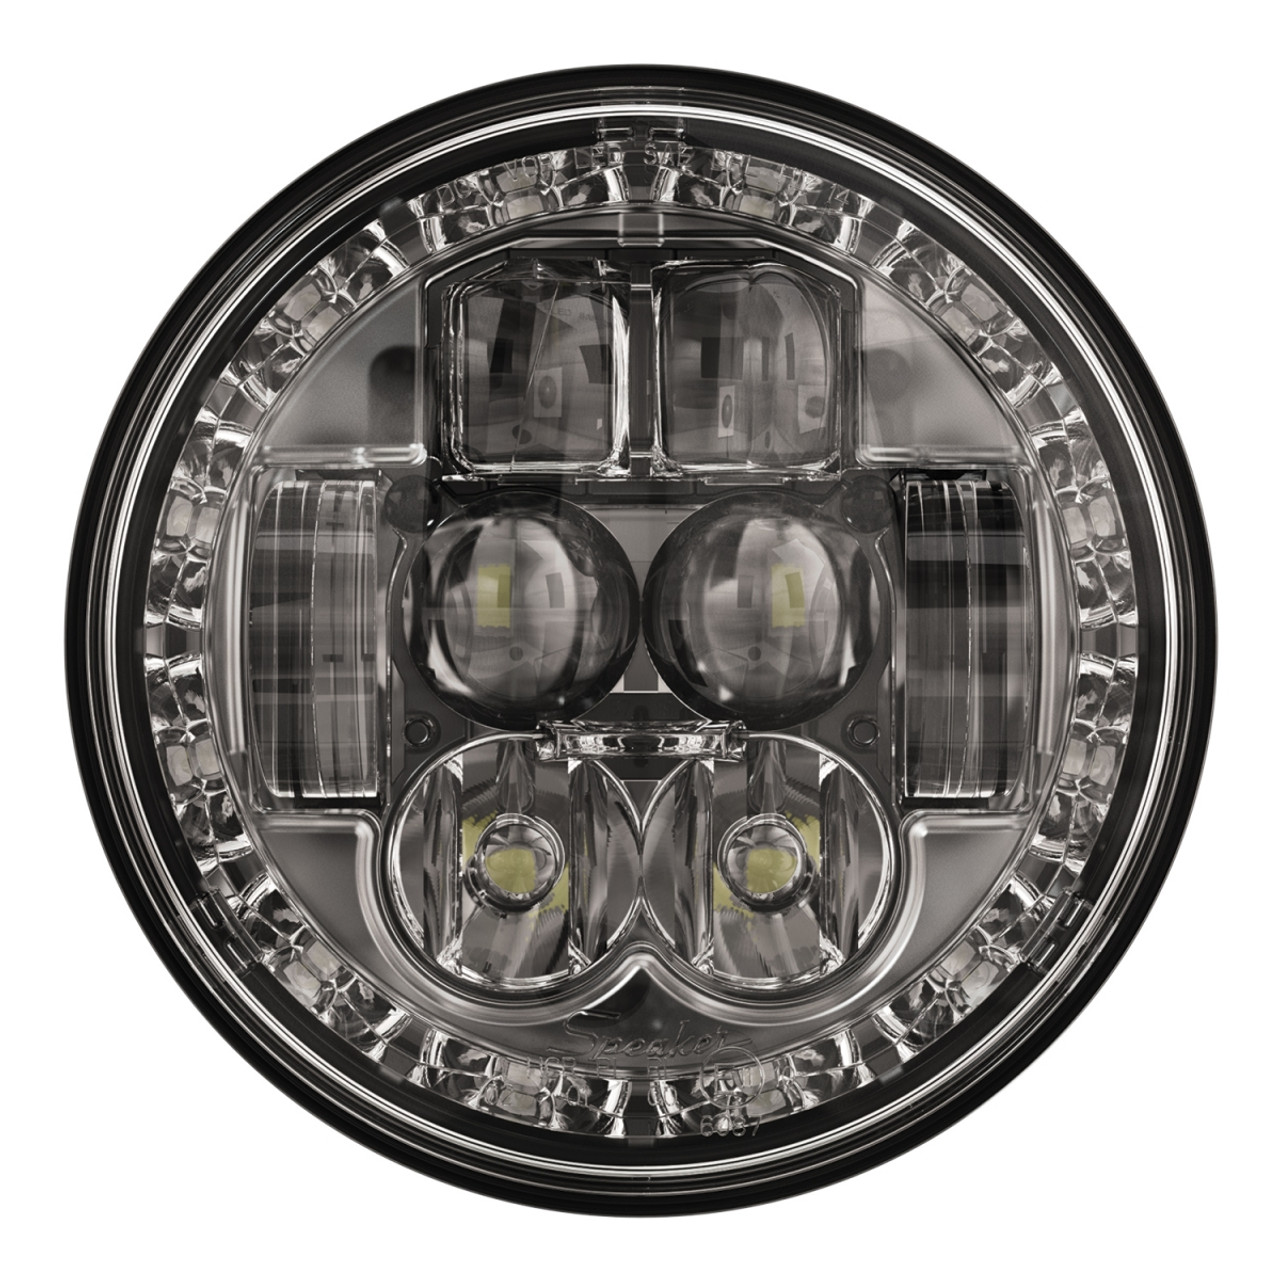 J.W. Speaker 12-24V DOT LED  High & Low Beam Headlight - Model 8630 Evolution